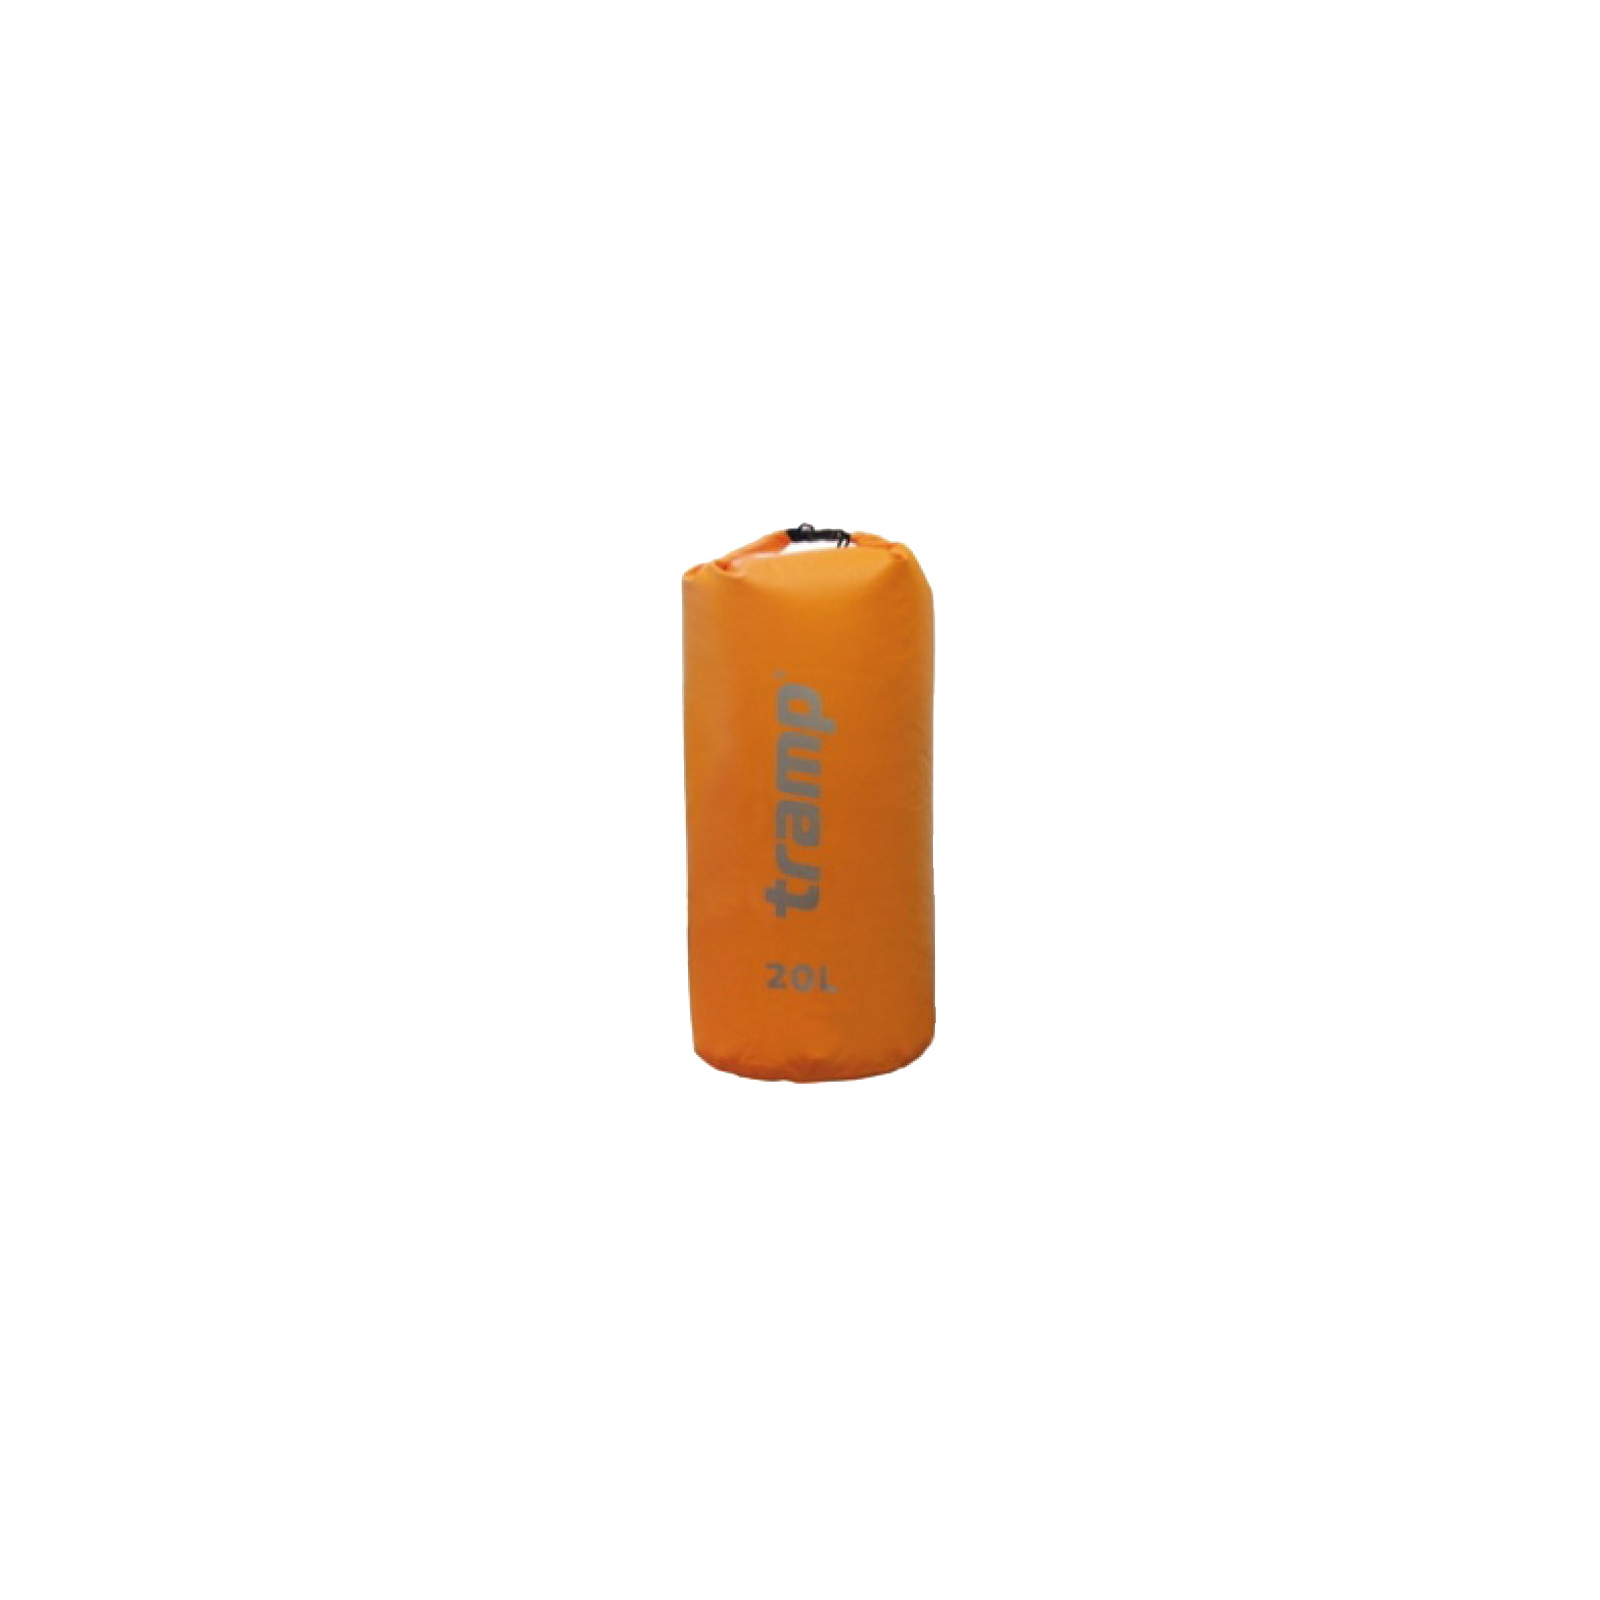 Гермомешок Tramp PVC 20 л оранжевый (TRA-067-orange)